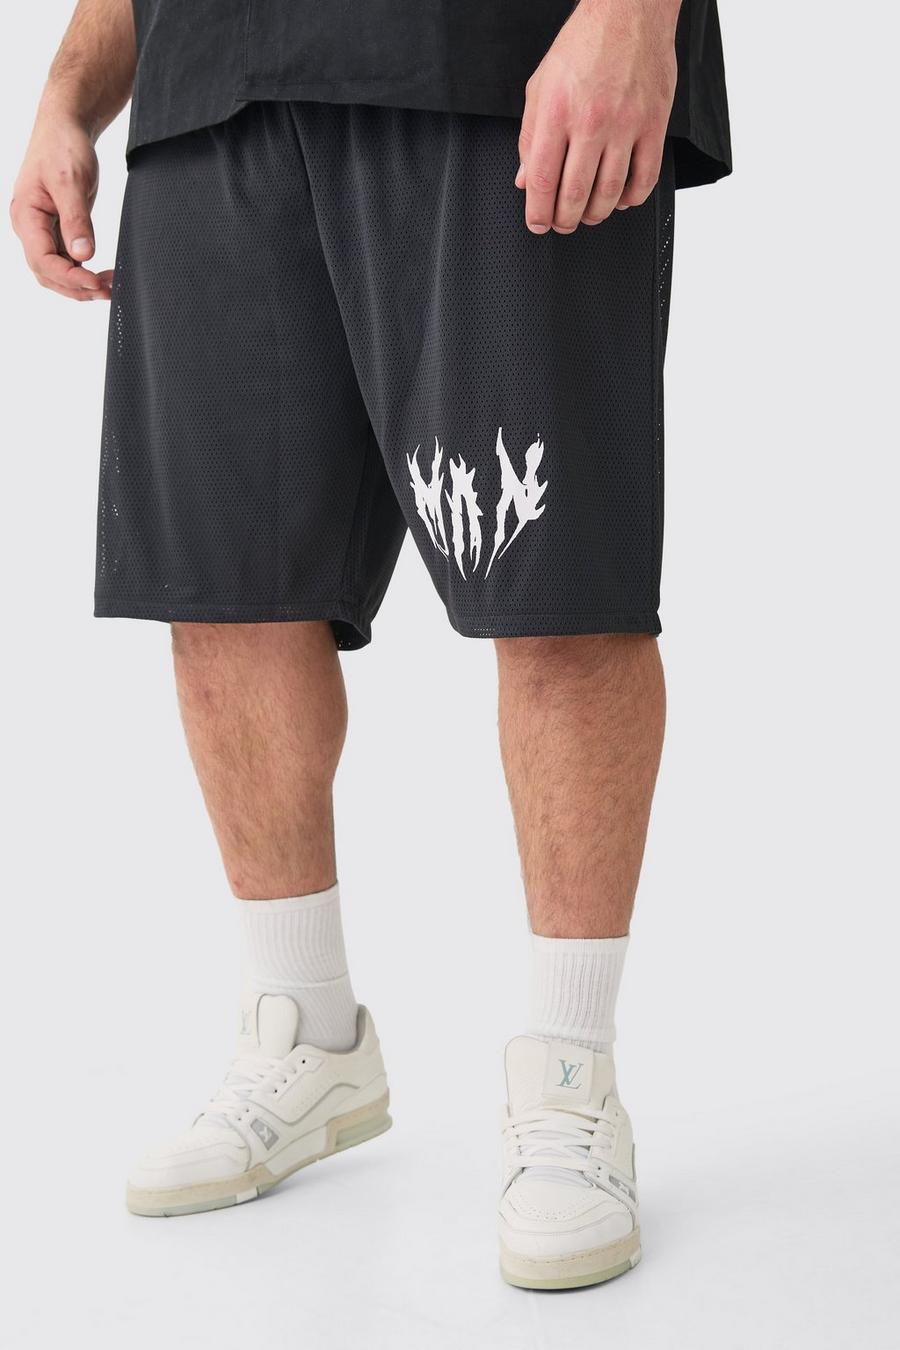 Pantalón corto Plus de airtéx con estampado de baloncesto, Black image number 1